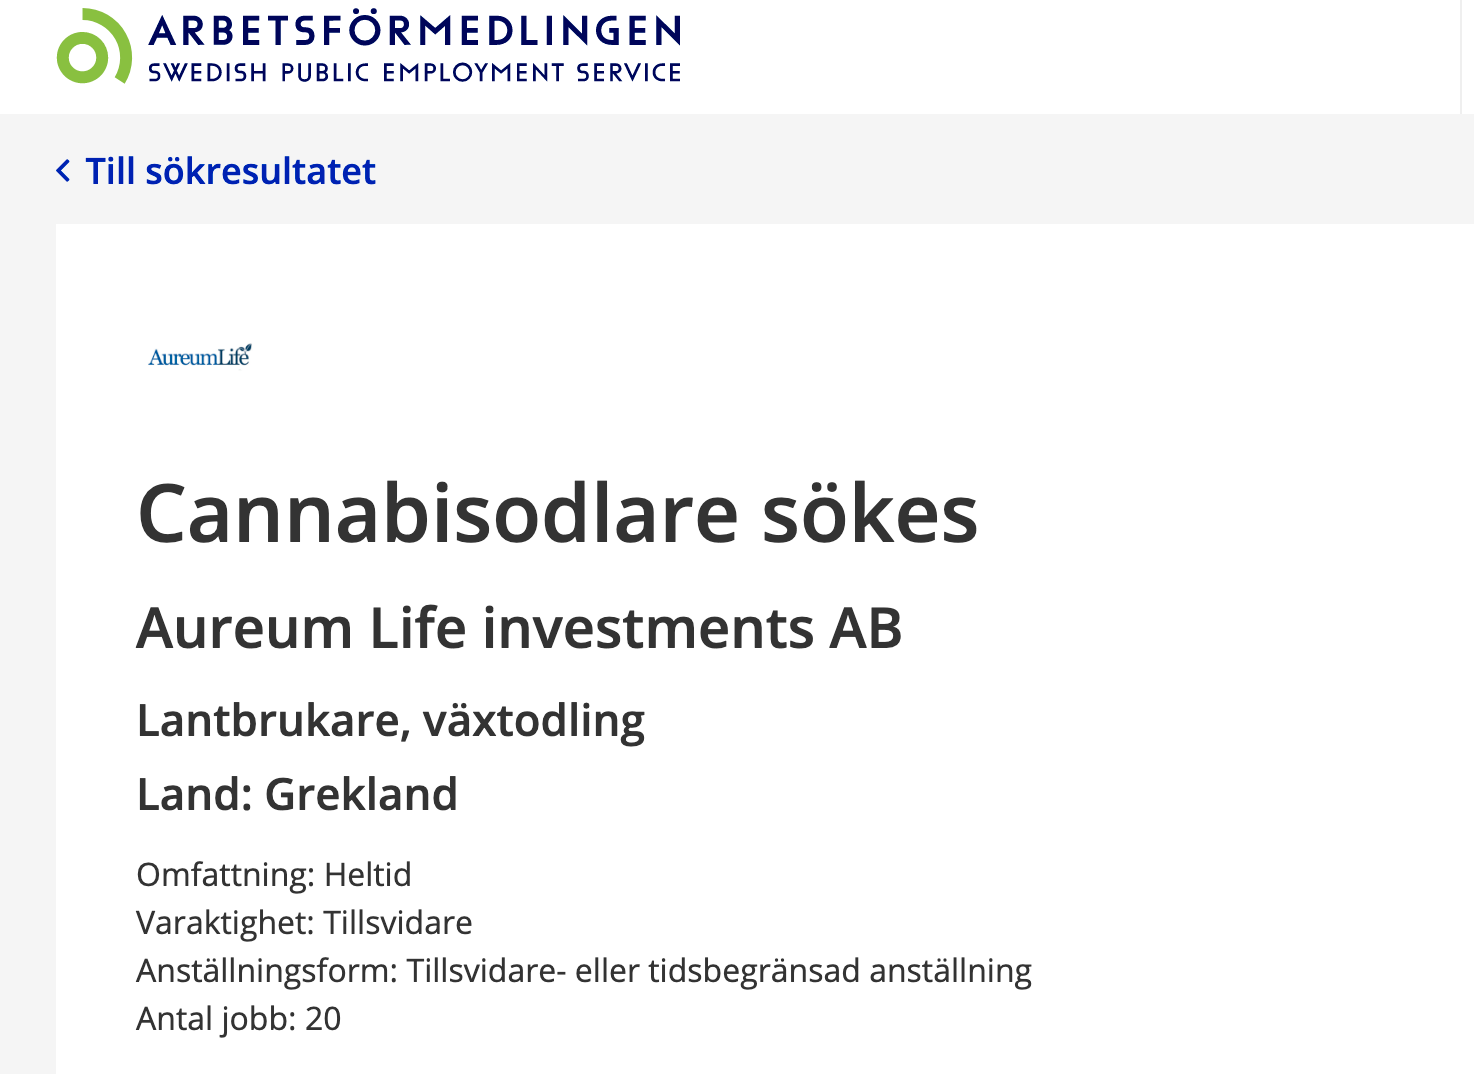 Enligt annonsen söker ett svenskt företag 20 cannabisodlare till deras plantage i Grekland. 